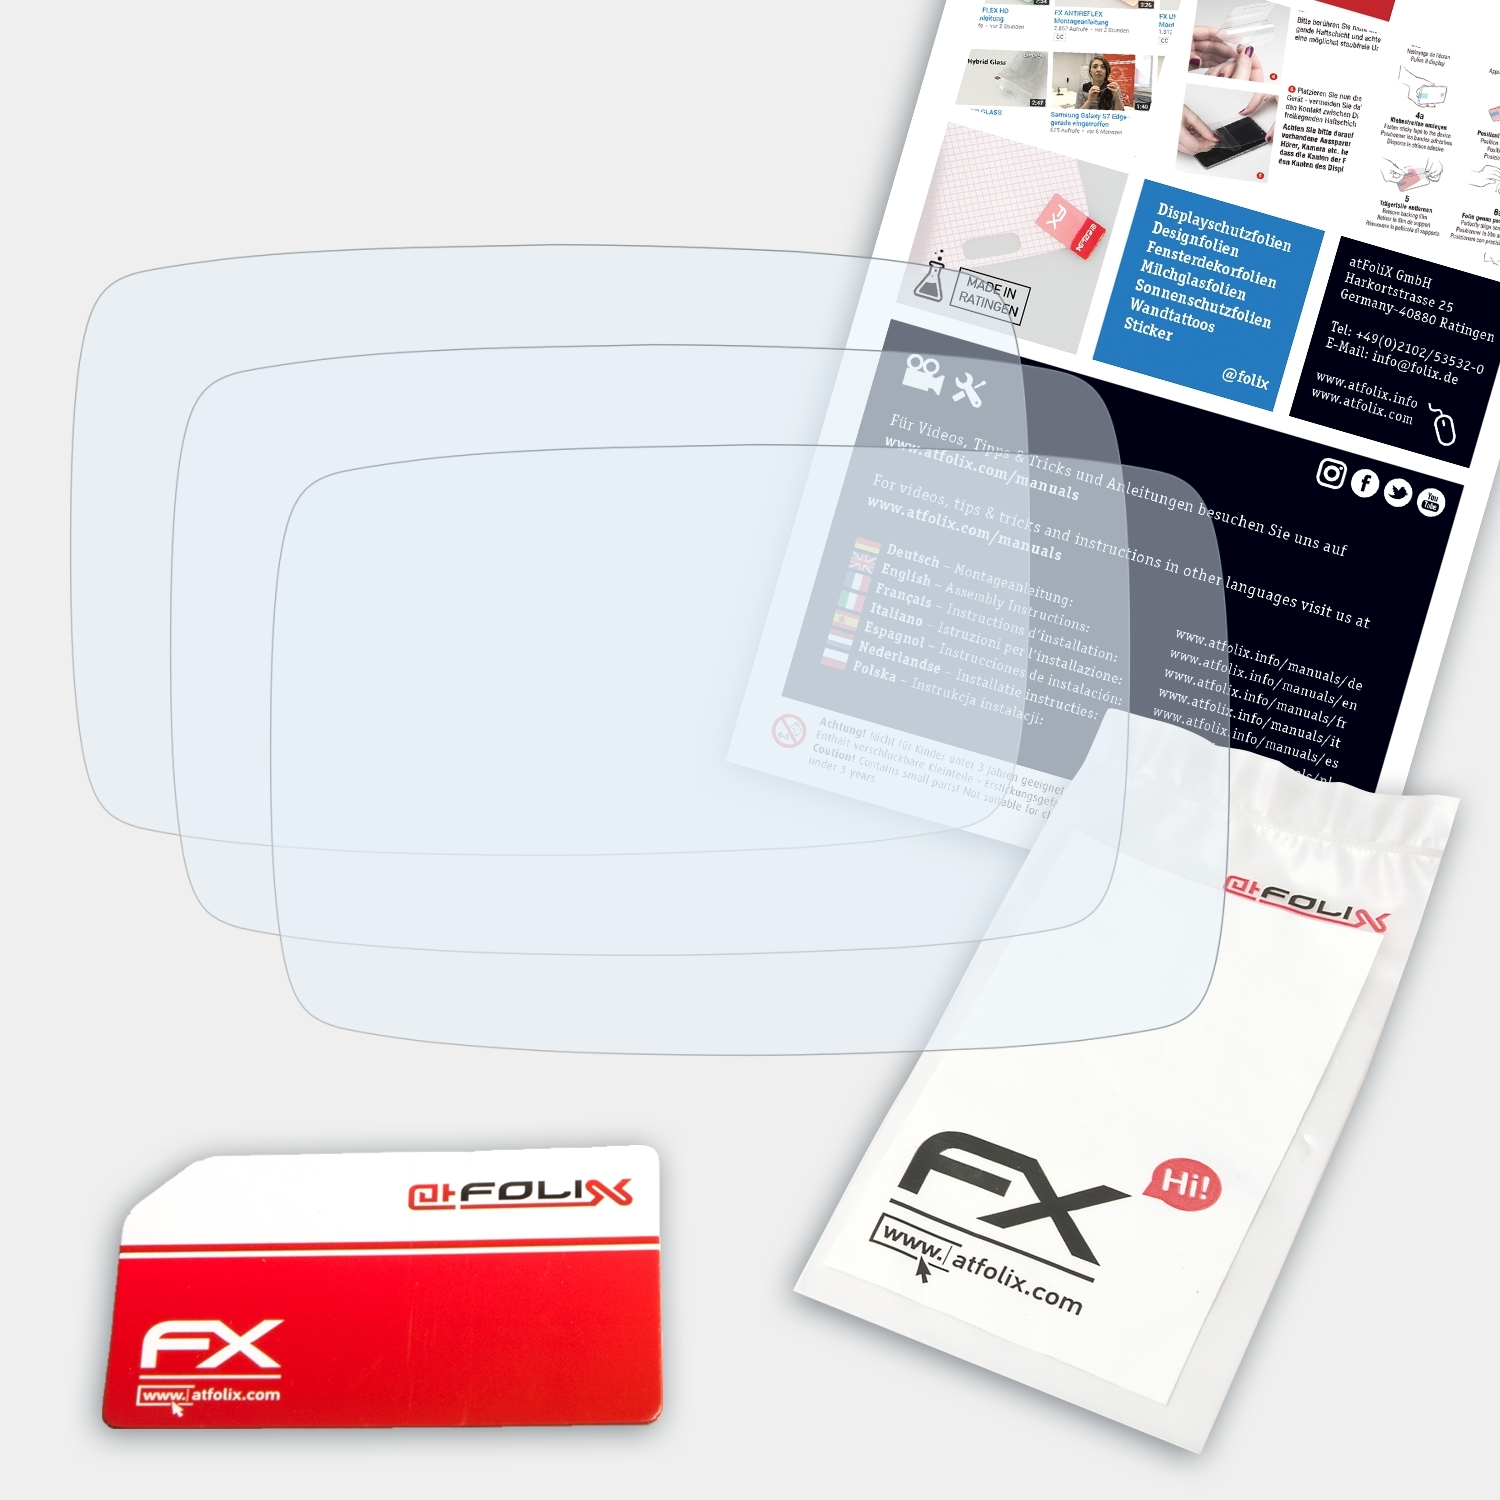 FX-Clear ATFOLIX GO Displayschutz(für (2013)) 3x TomTom 600